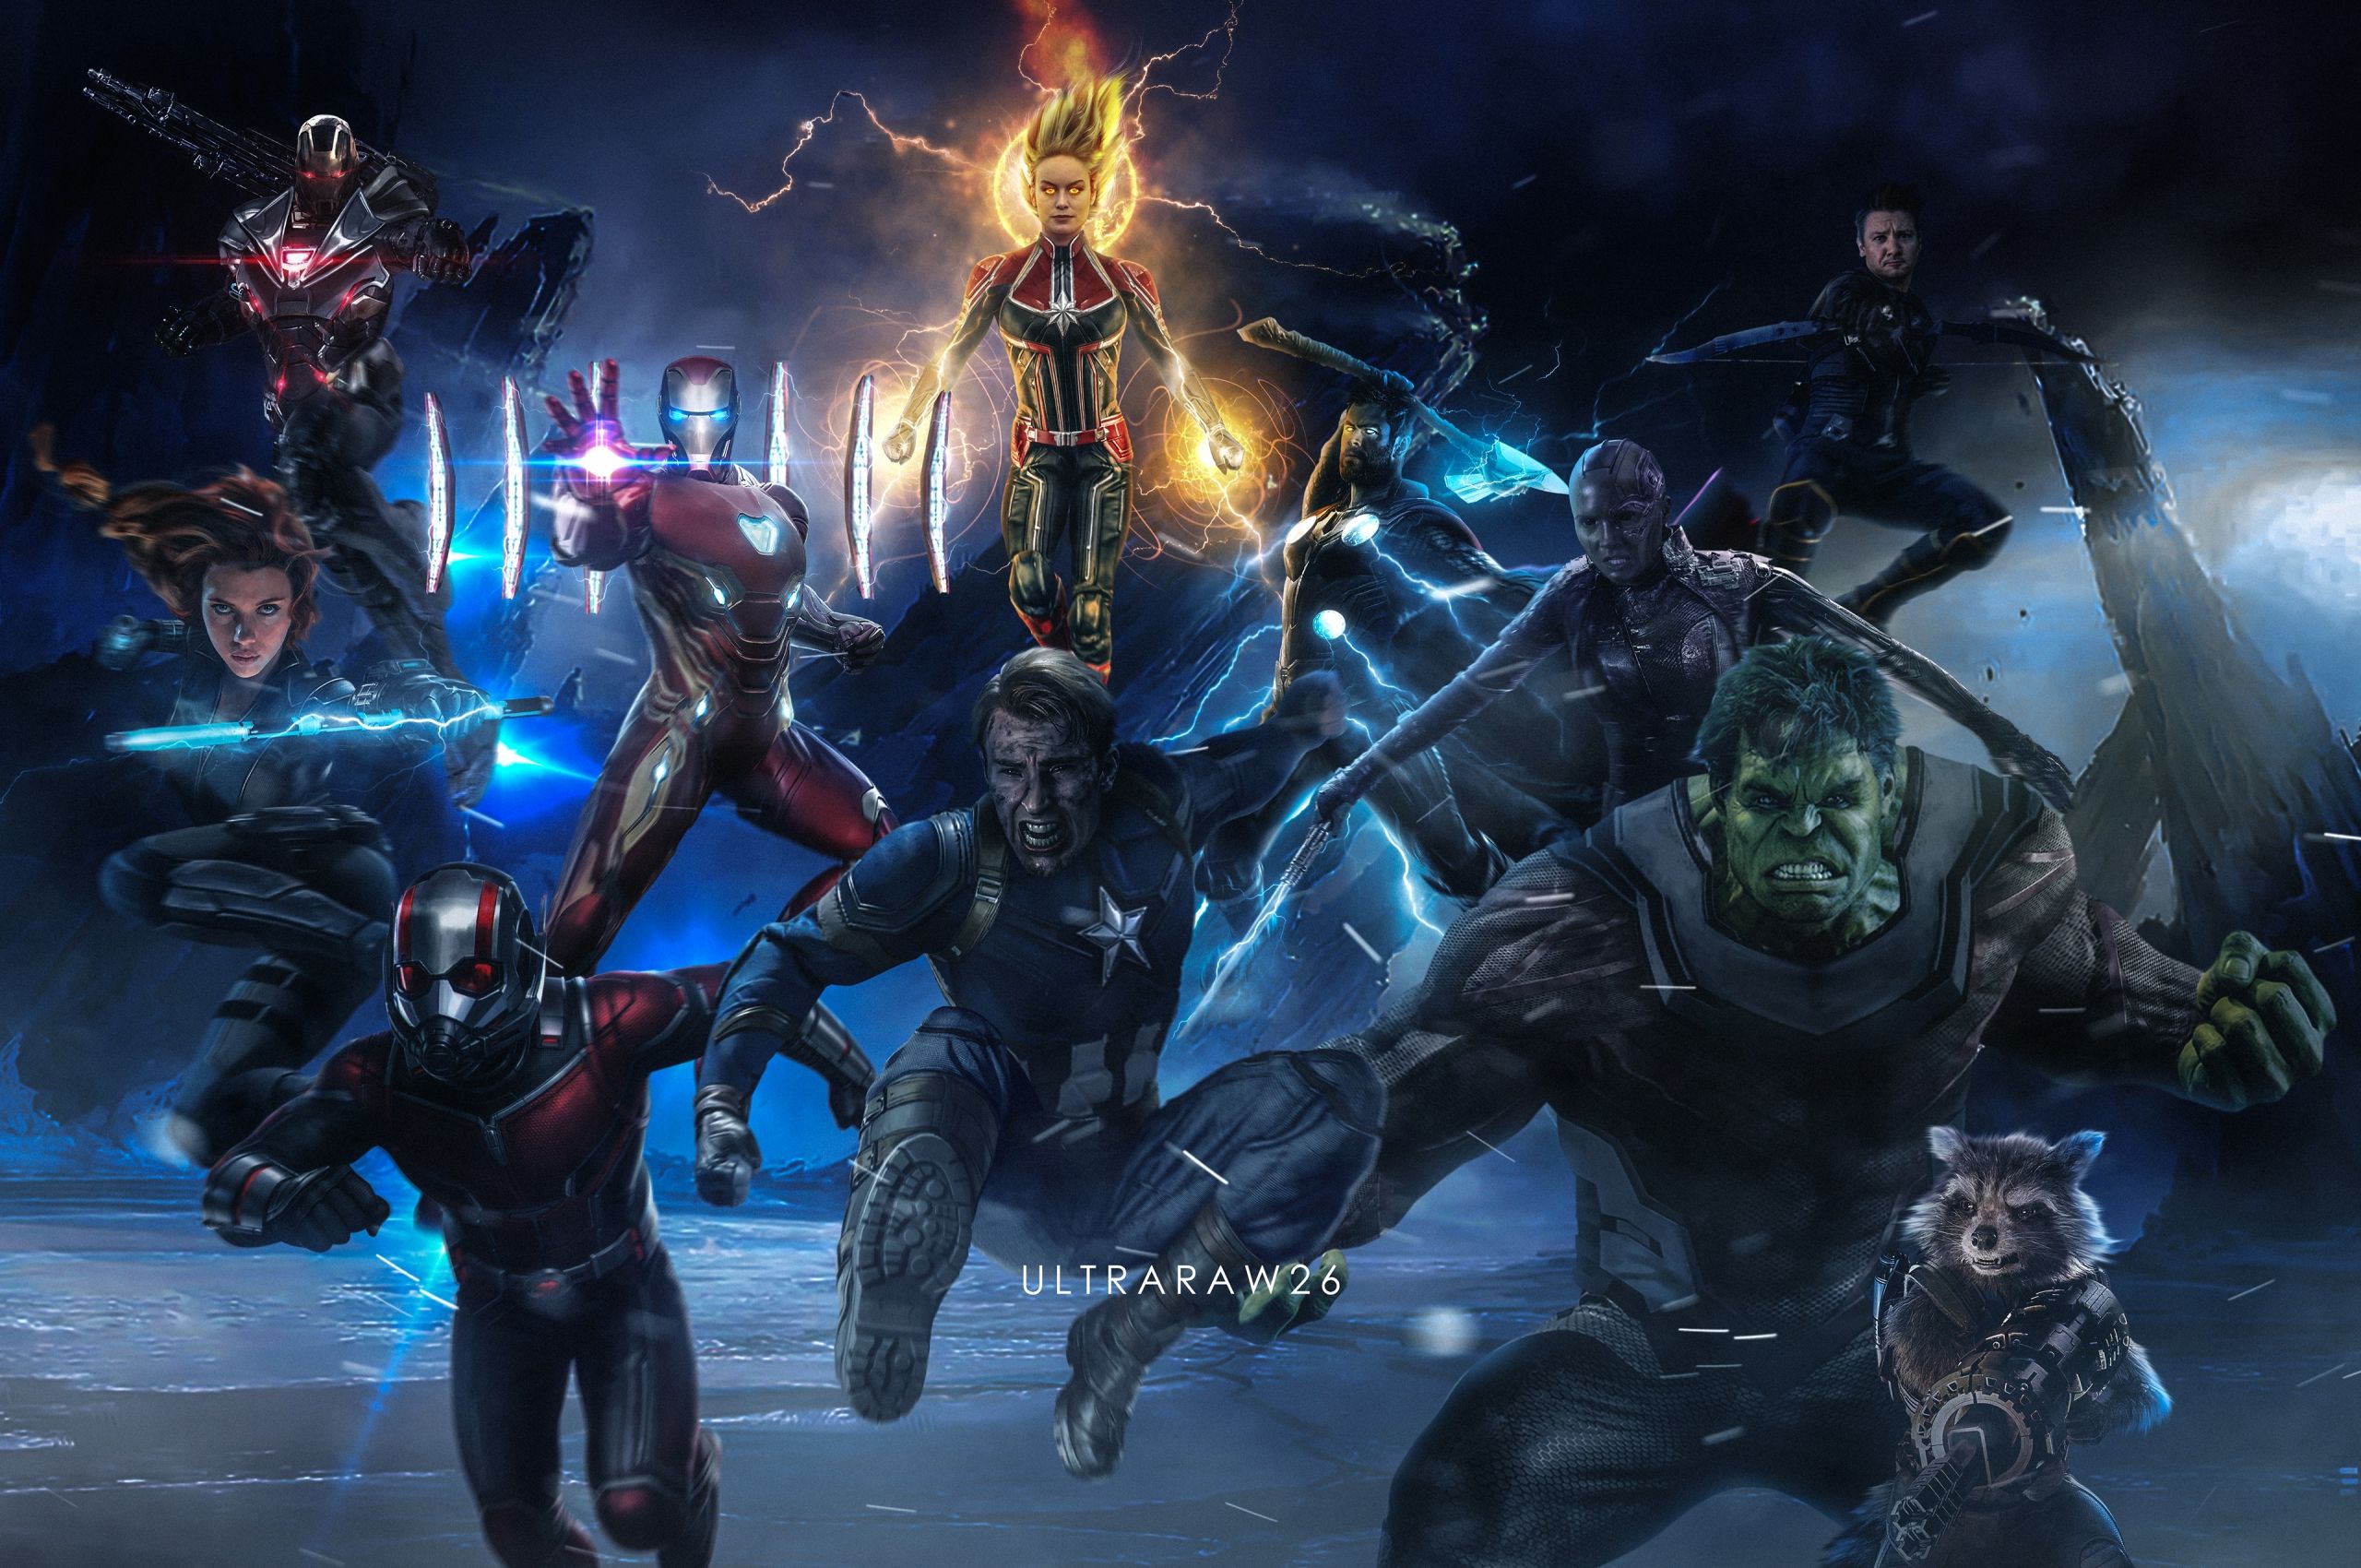 Free download Avengers EndGame Iron Man Thor Hulk Black Widow War